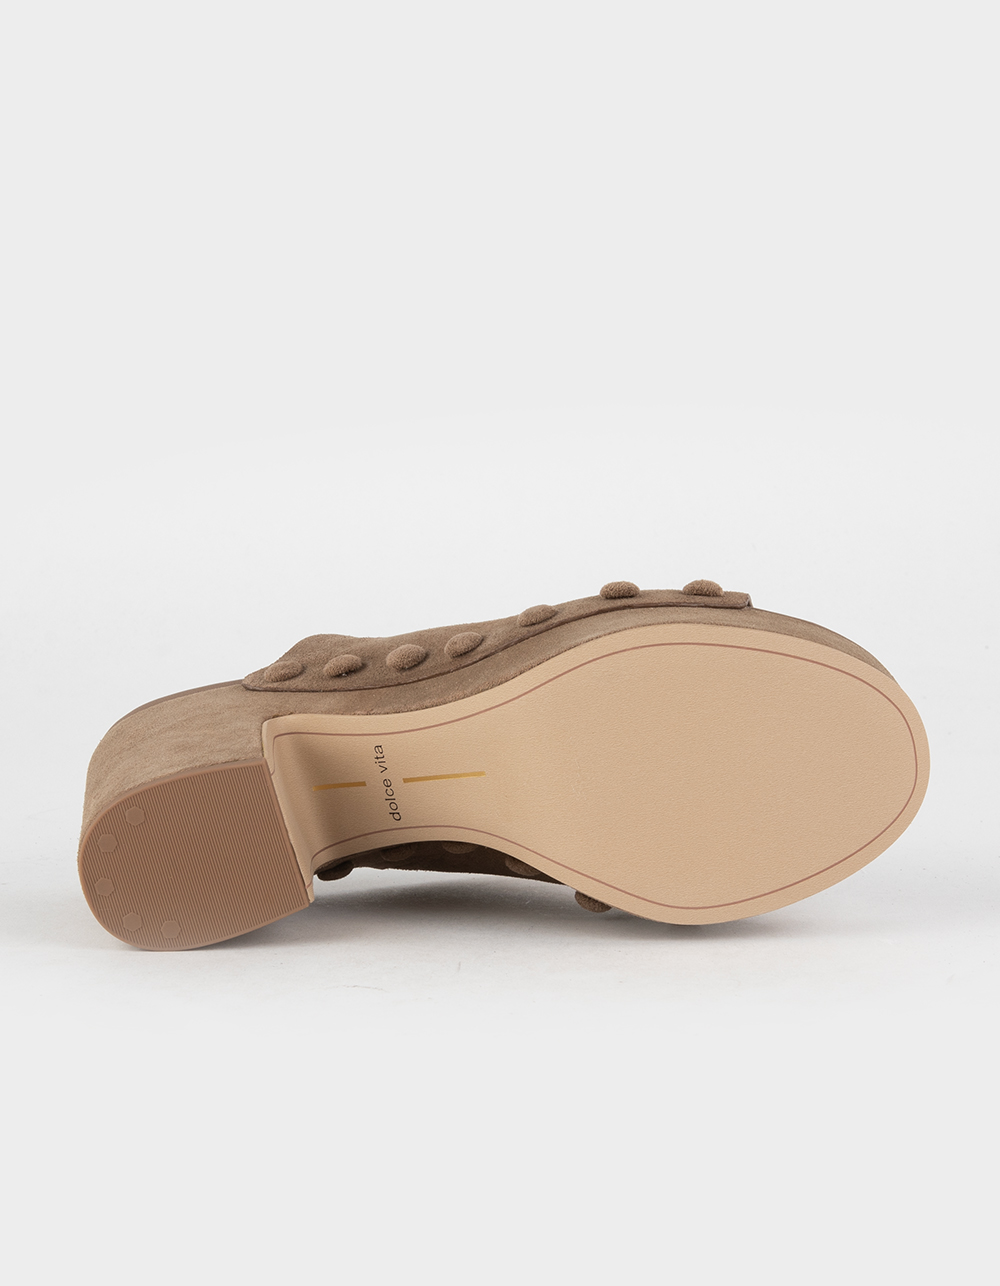 DOLCE VITA Emol Womens Platform Sandals - MUSHROOM | Tillys